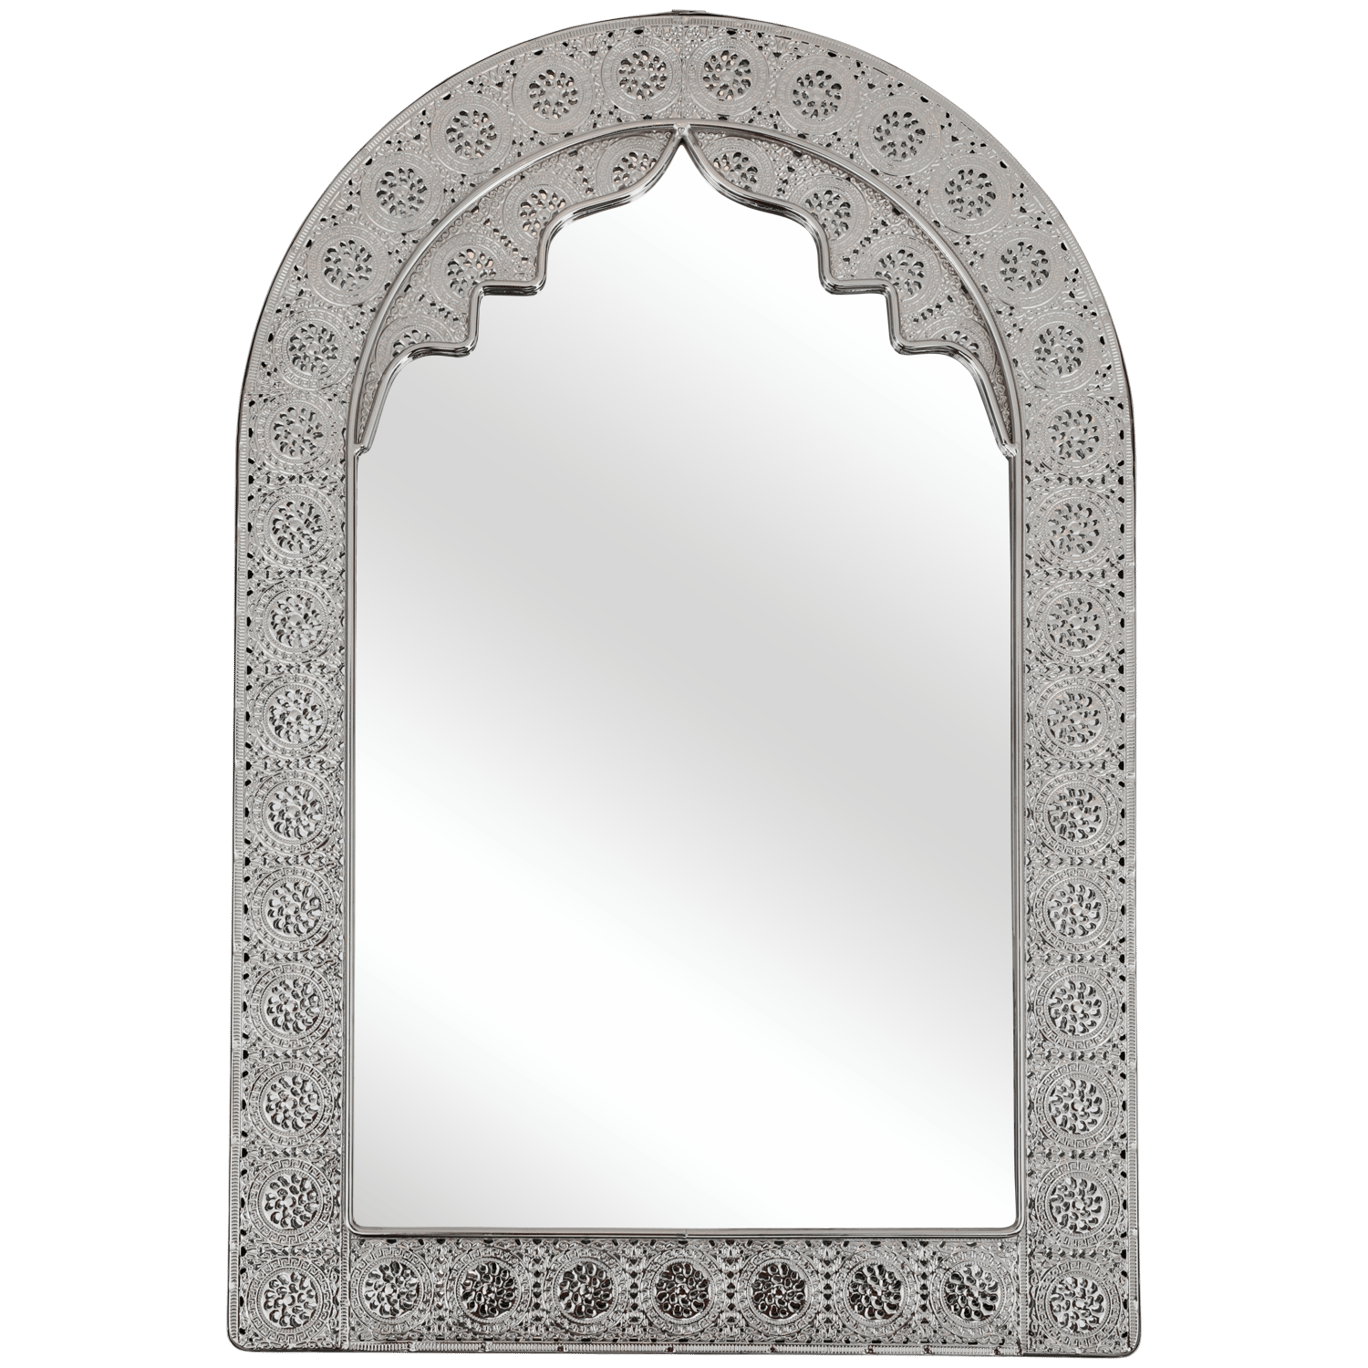 aanvulling filter reservering Decoratieve spiegel | Action.com